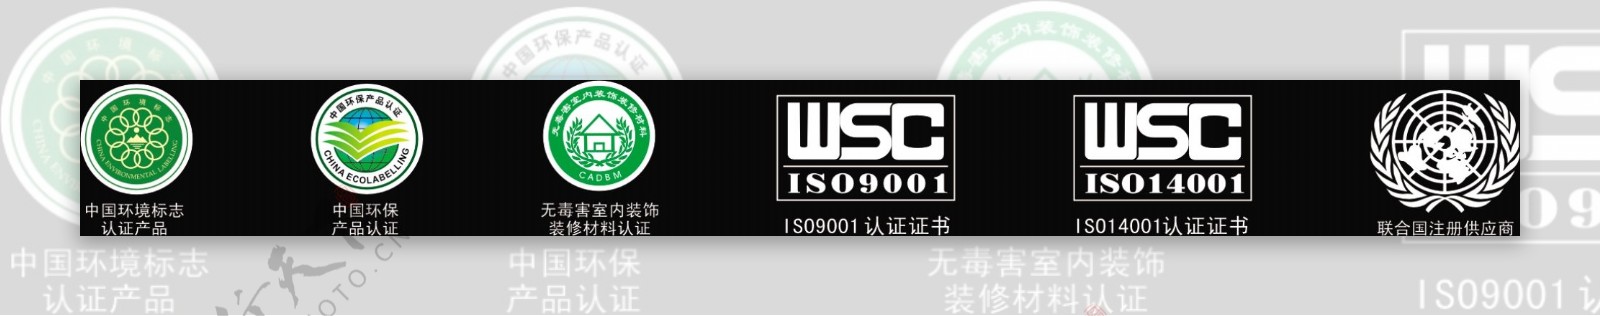 认证标志ISO图片